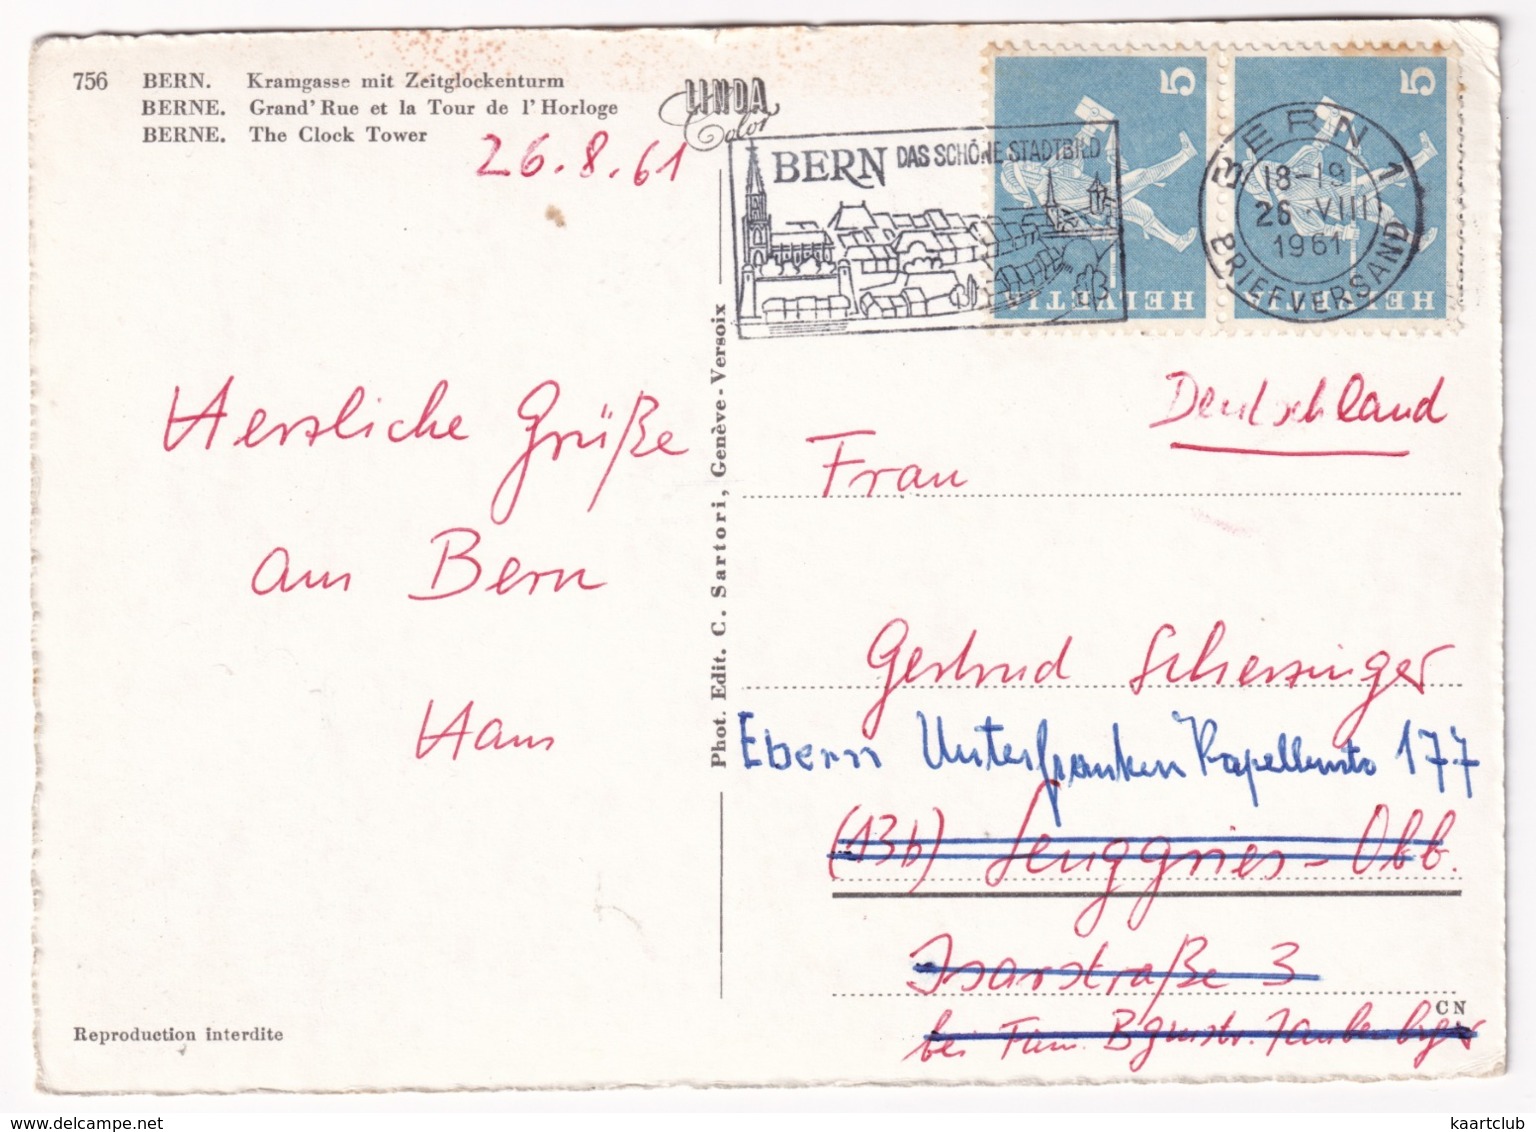 Bern: PEUGEOT 202, CITROËN TRACTION AVANT - Grand'Rue Et La Tour De L'Horloge  - (Schweiz/Suisse) - 1961 - Turismo